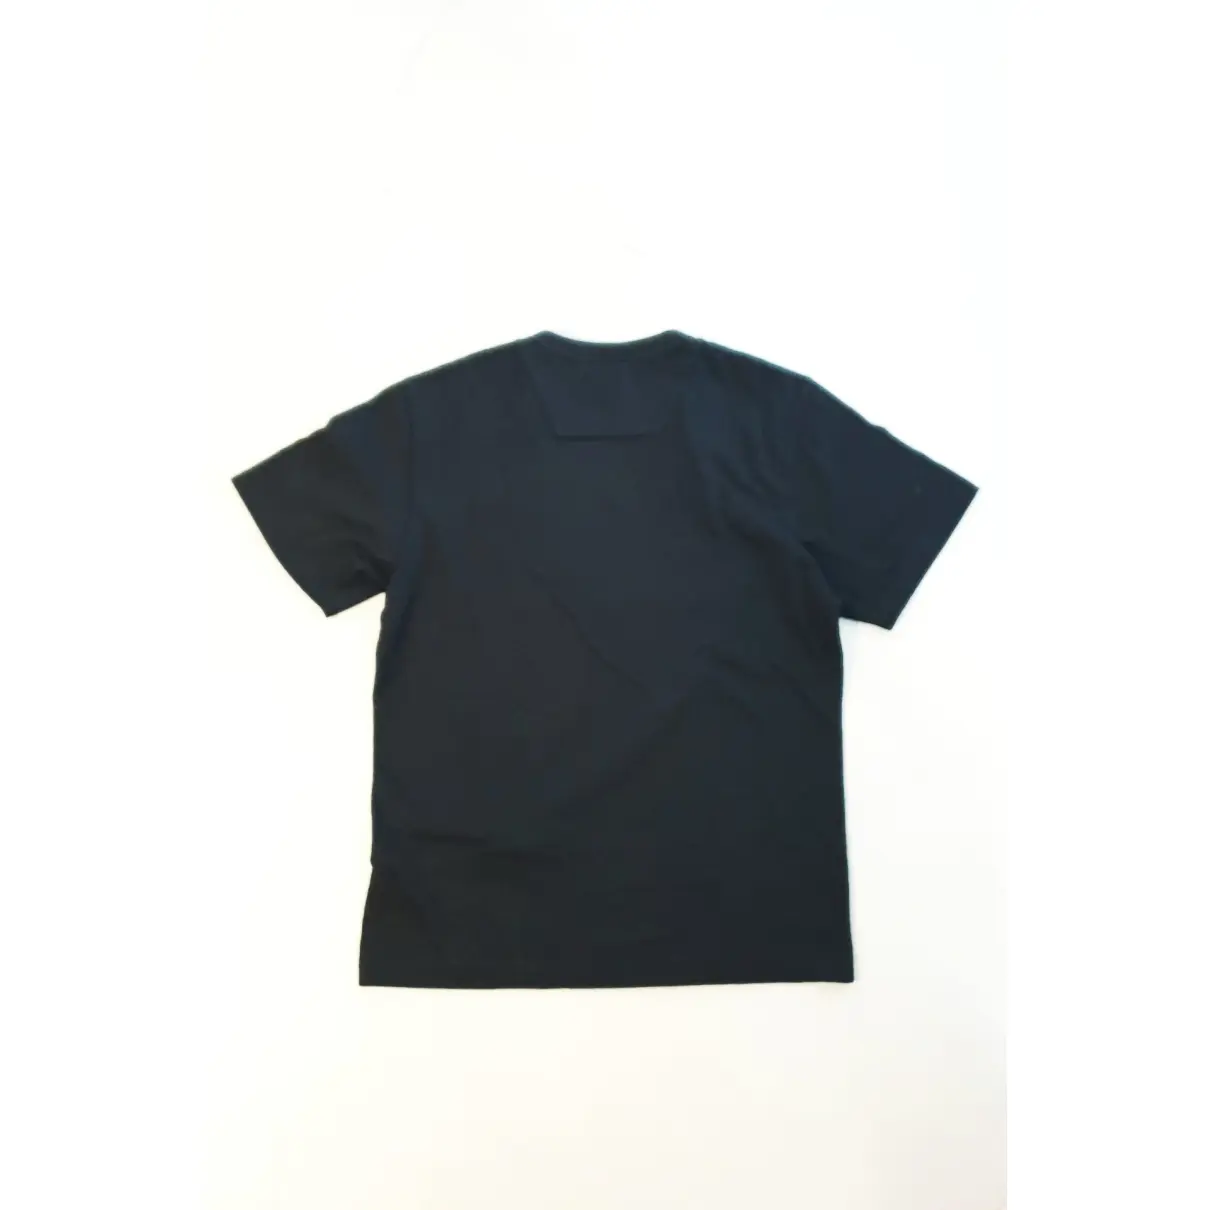 Buy Juunj Black Cotton T-shirt online